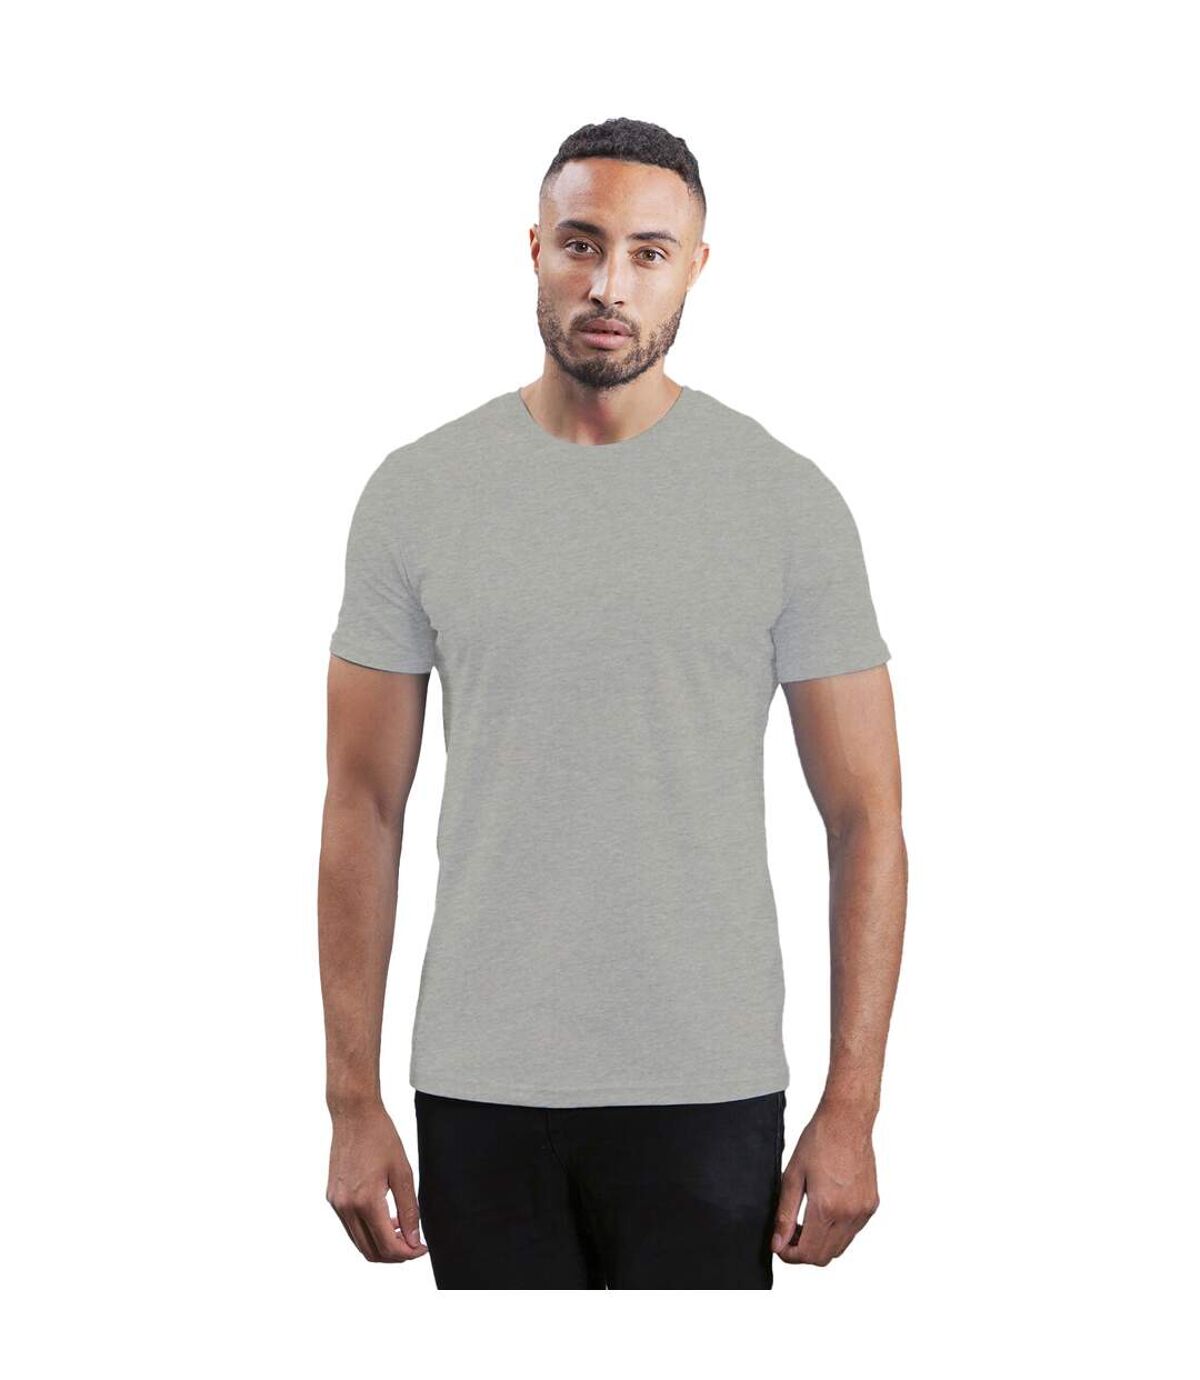 Mantis - T-shirt - Homme (Gris) - UTBC4764